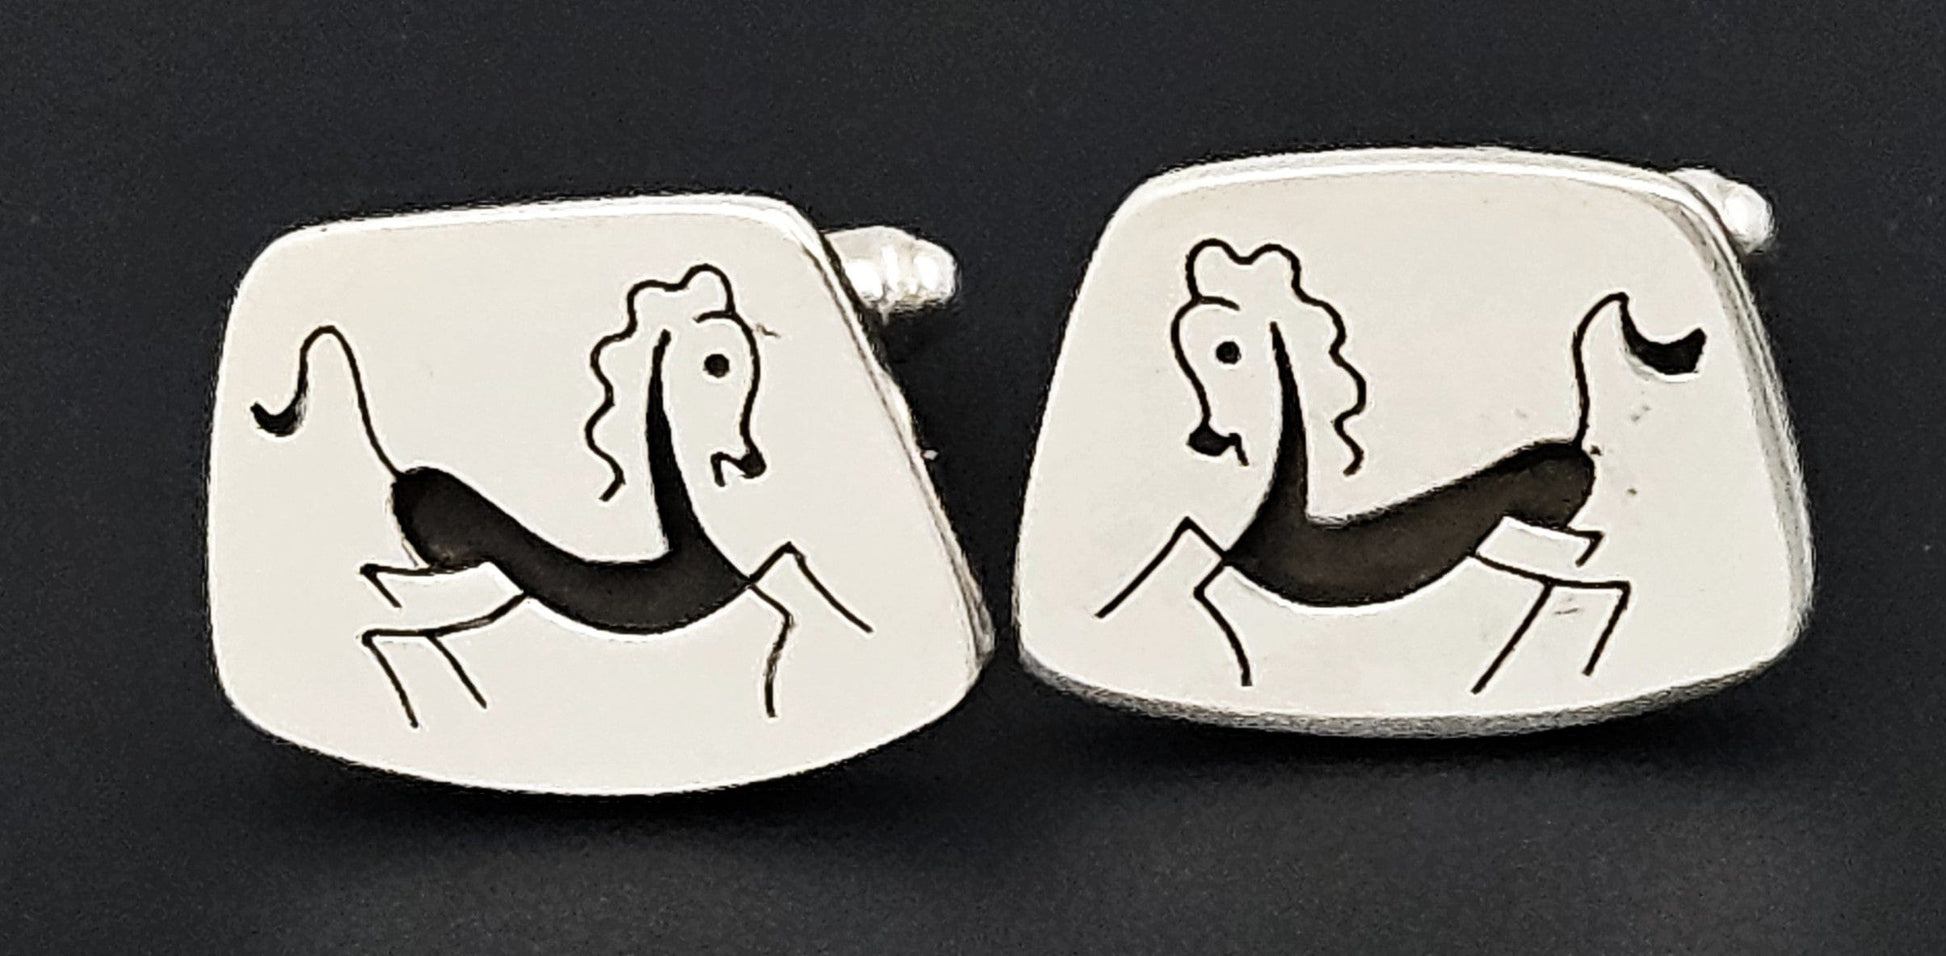 Sterling & Enamel Cufflinks Jewelry Vintage Artisan Sterling & Enamel Primitive Cave Petroglyph Horse Cufflinks